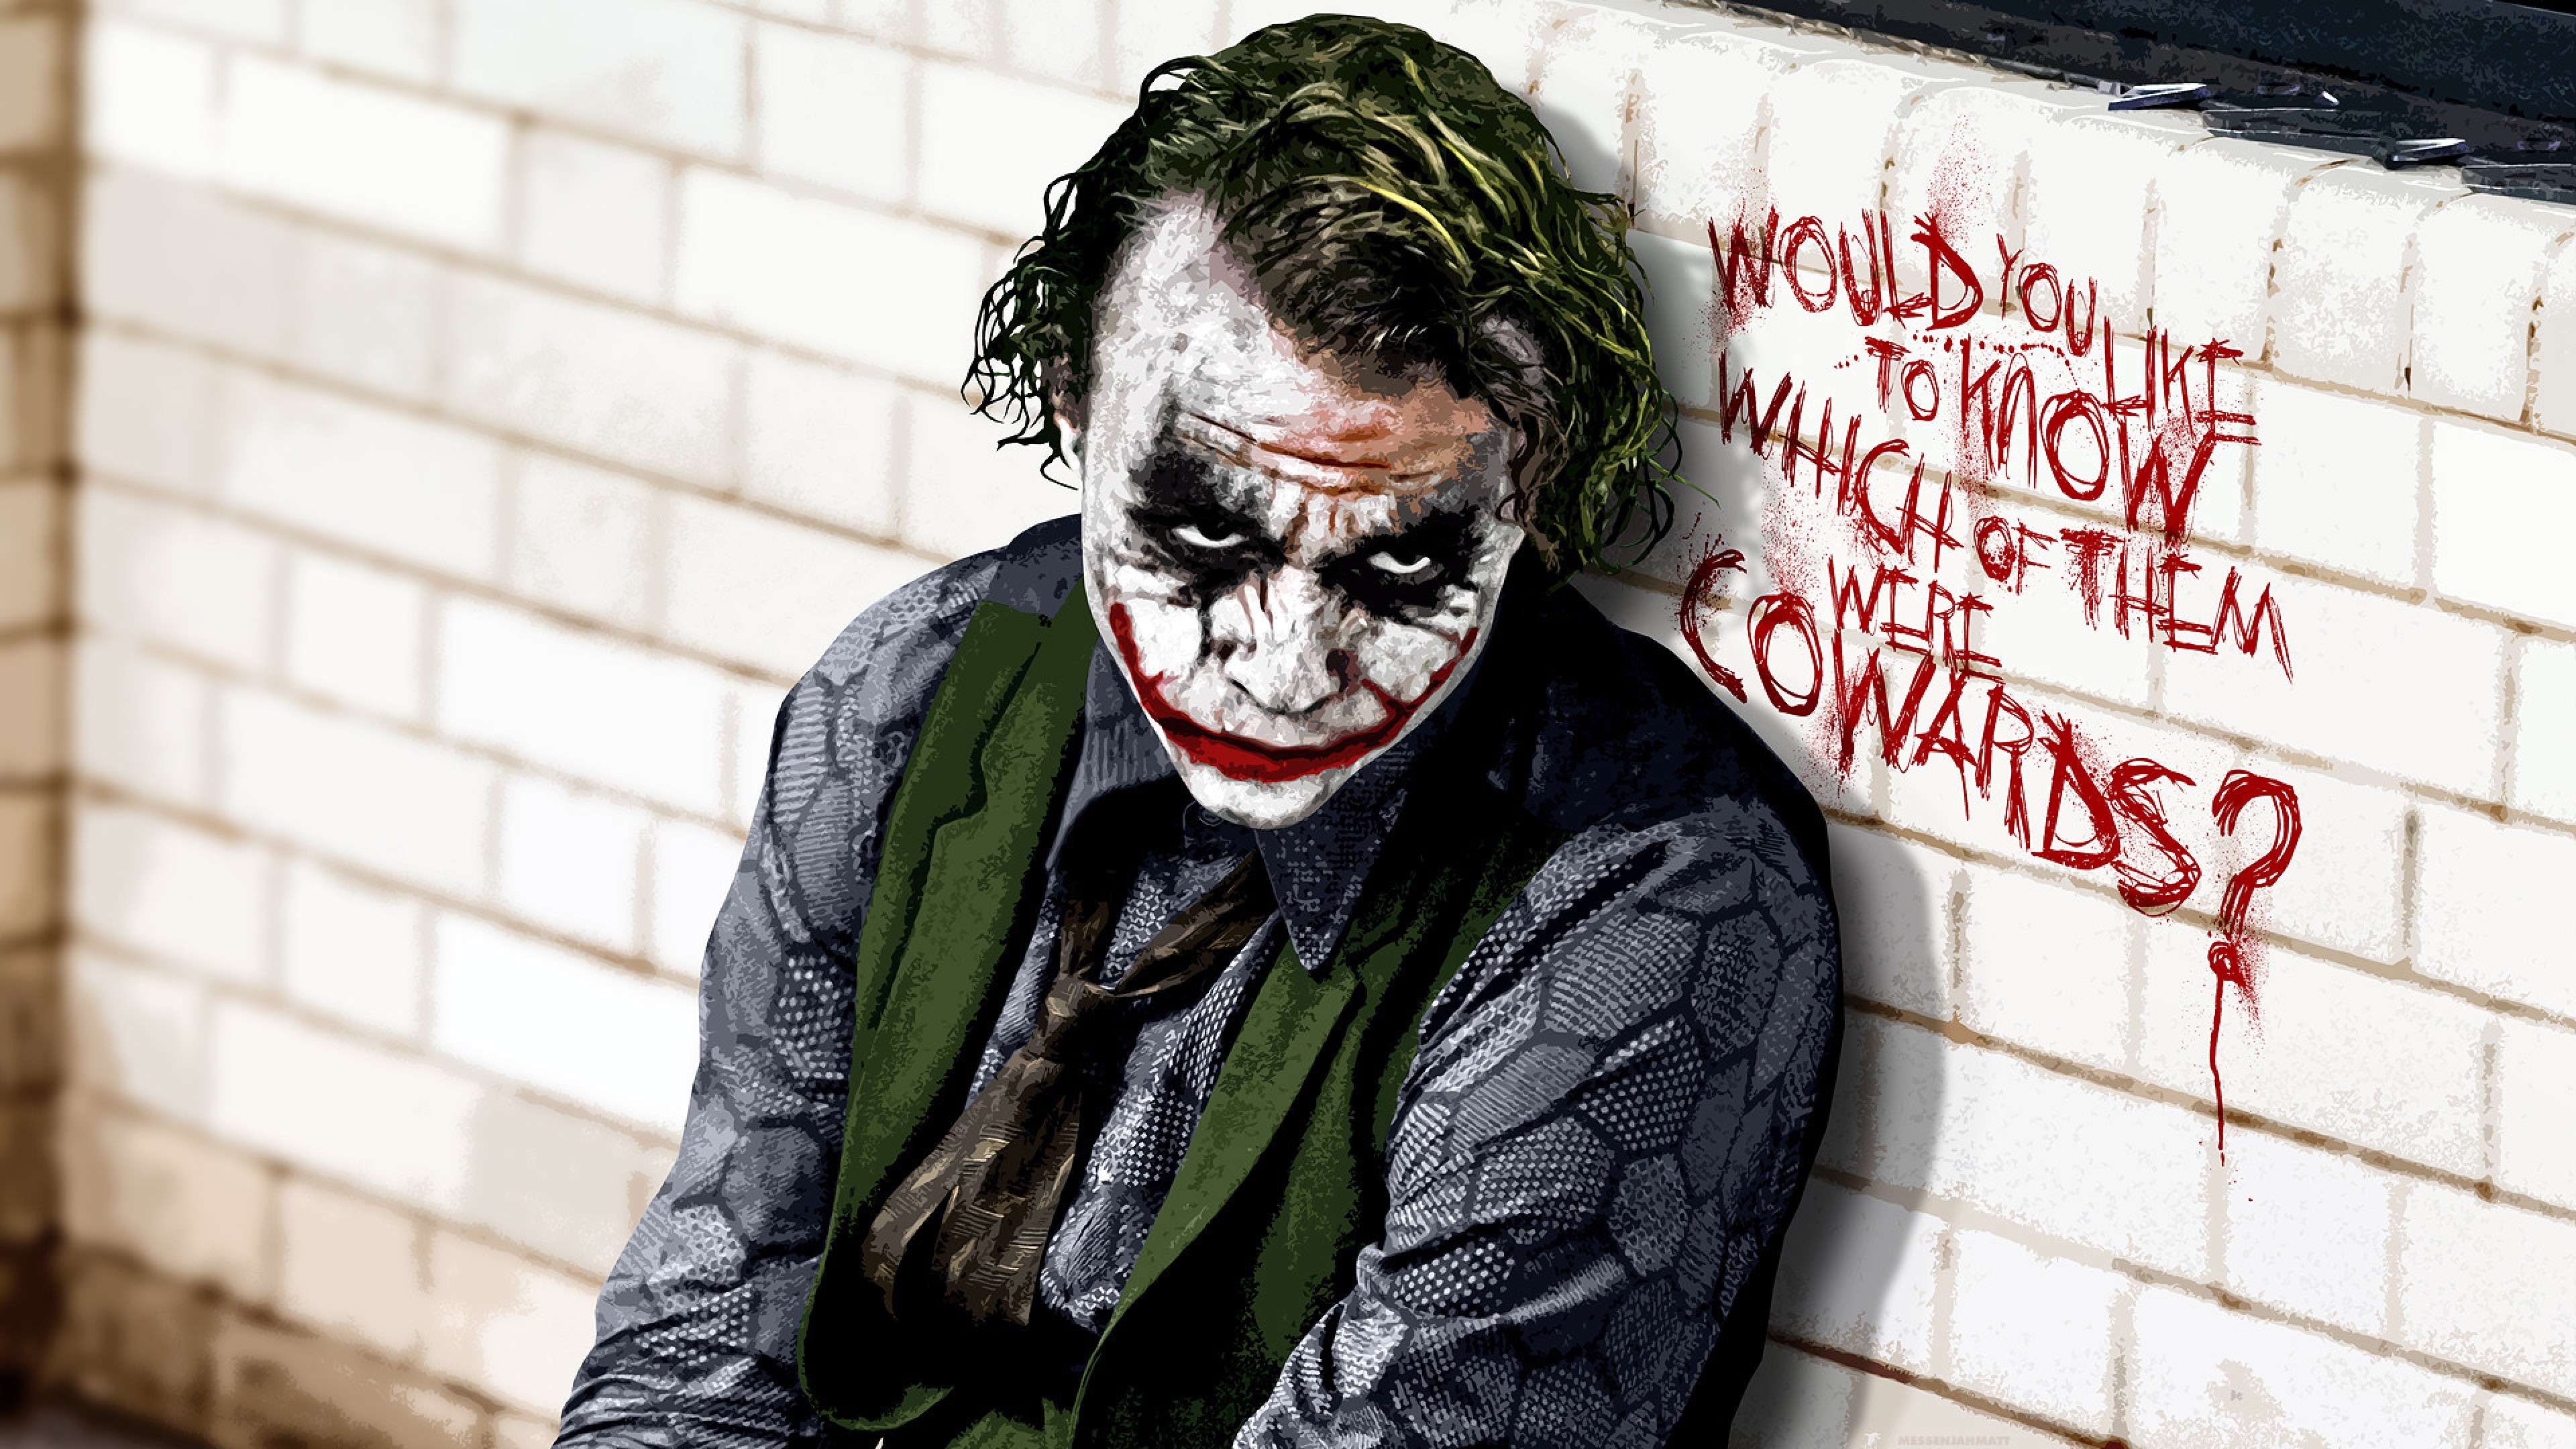 Joker (The Dark Knight) HD wallpaper 4K Ultra HD - HD Wallpaper - Wallpapers .net